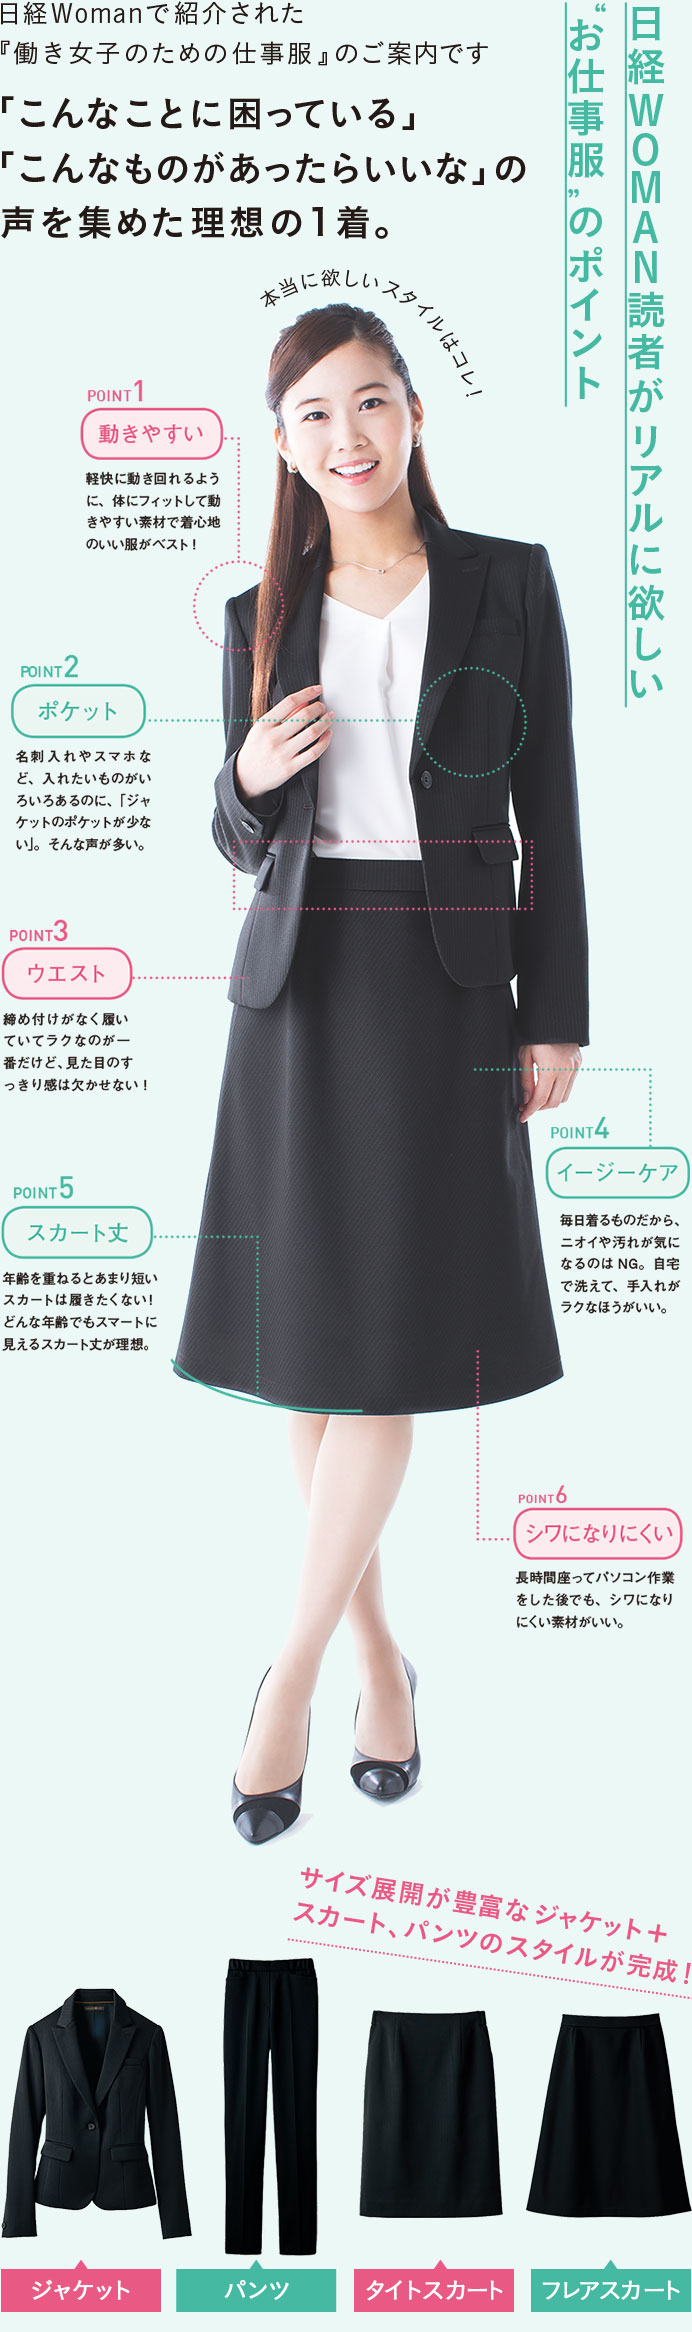 日経Womanで紹介された「働き女子のための仕事服」のご案内です。「こんなことに困っている」「こんなのがあったらいいな」の声を集めた理想の１着